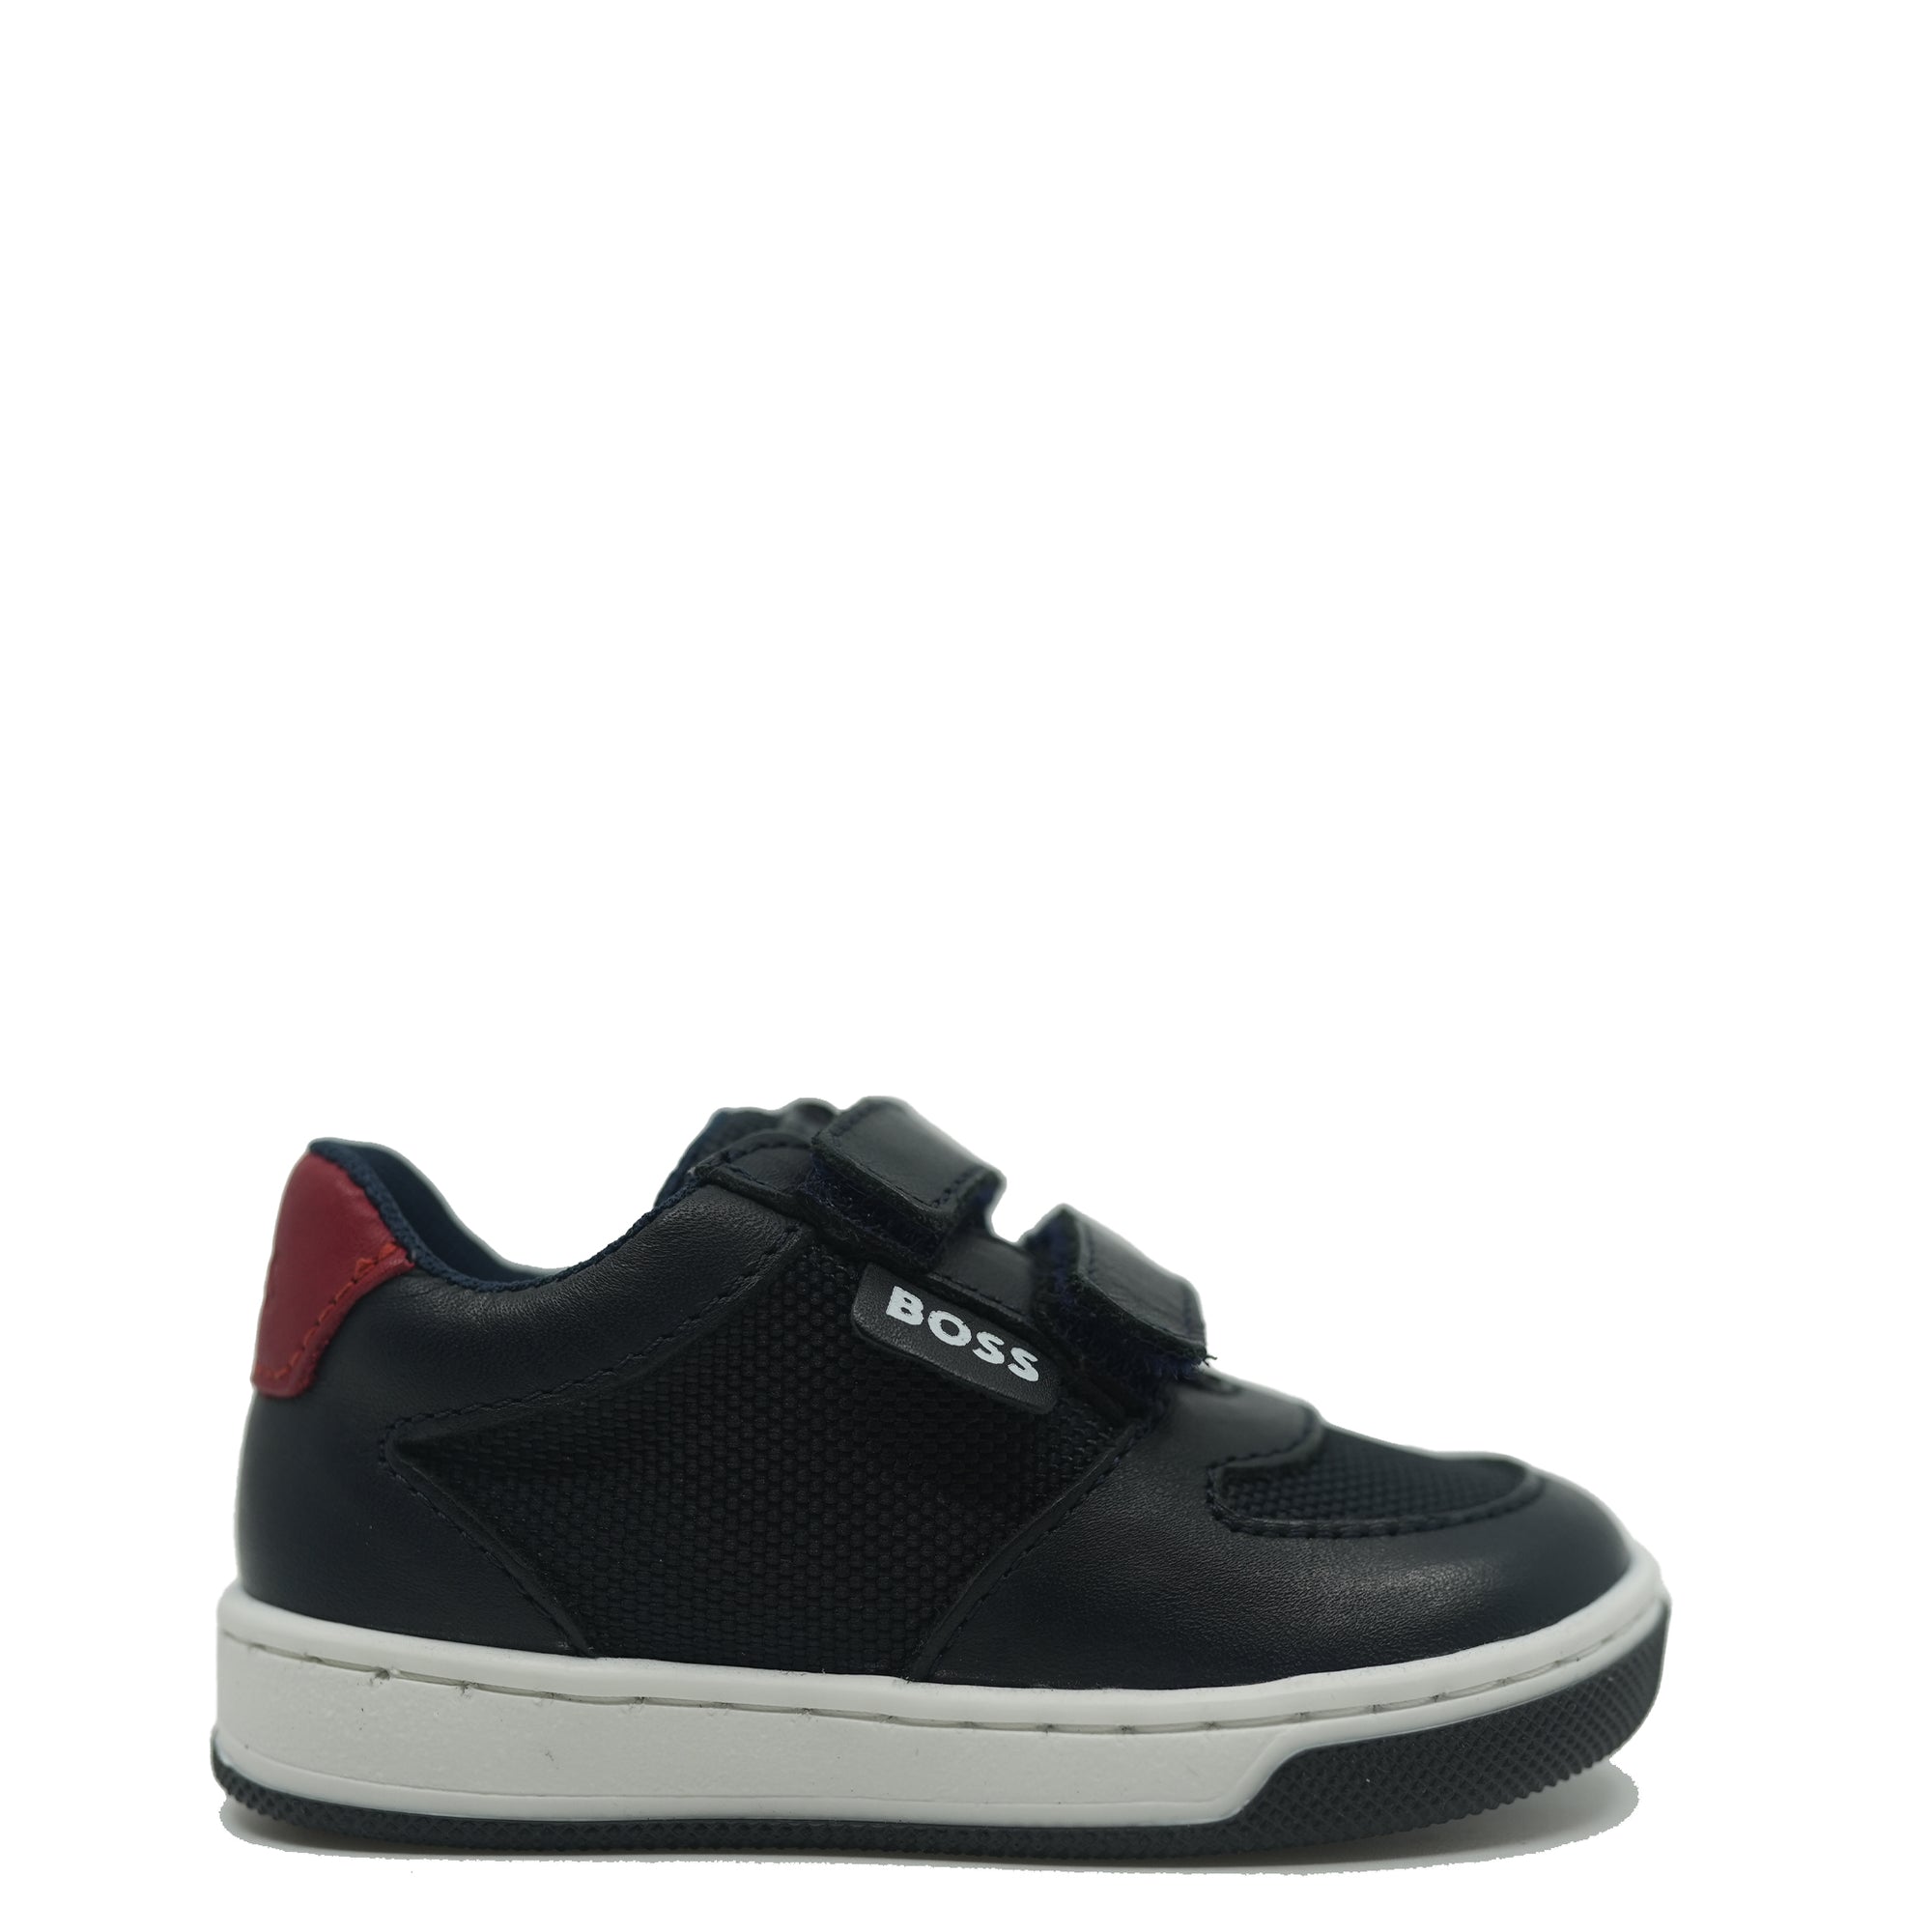 Hugo Boss Black Velcro Baby Sneaker-Tassel Children Shoes